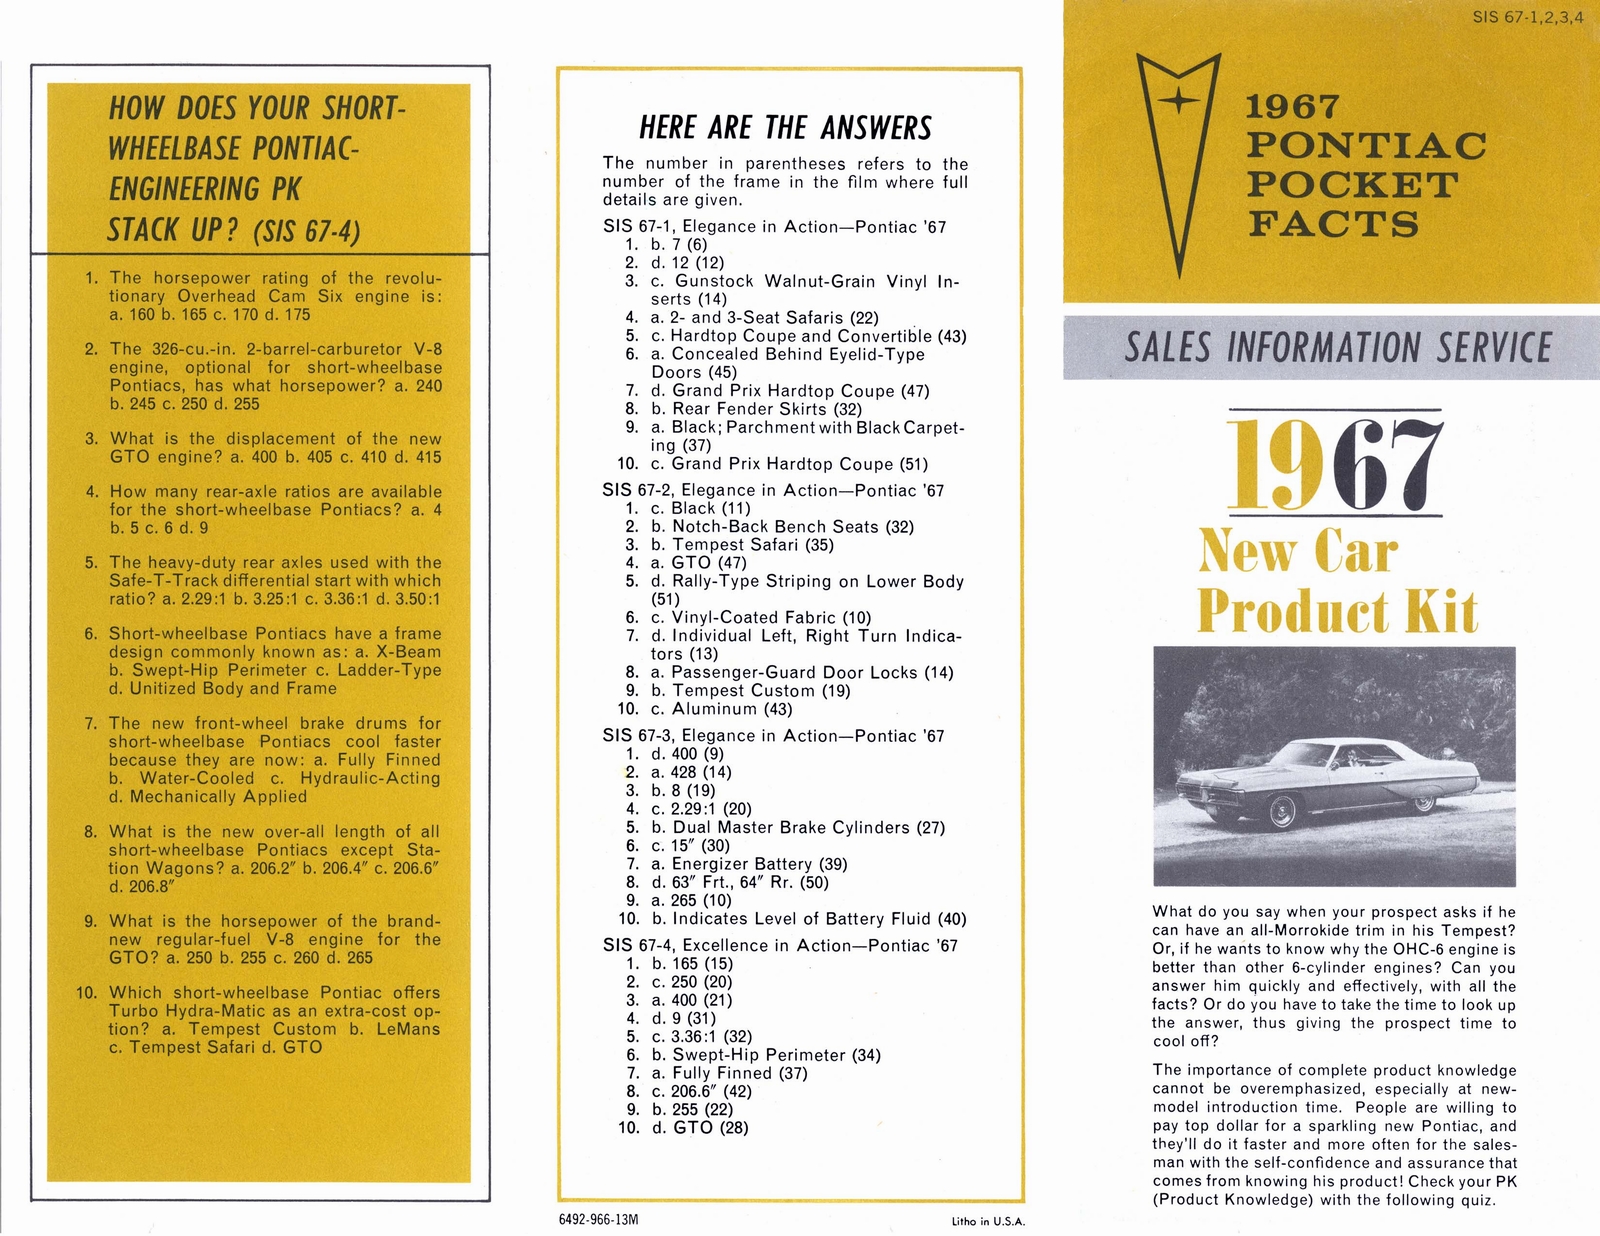 n_1967 Pontiac Pocket Product Kit-01.jpg